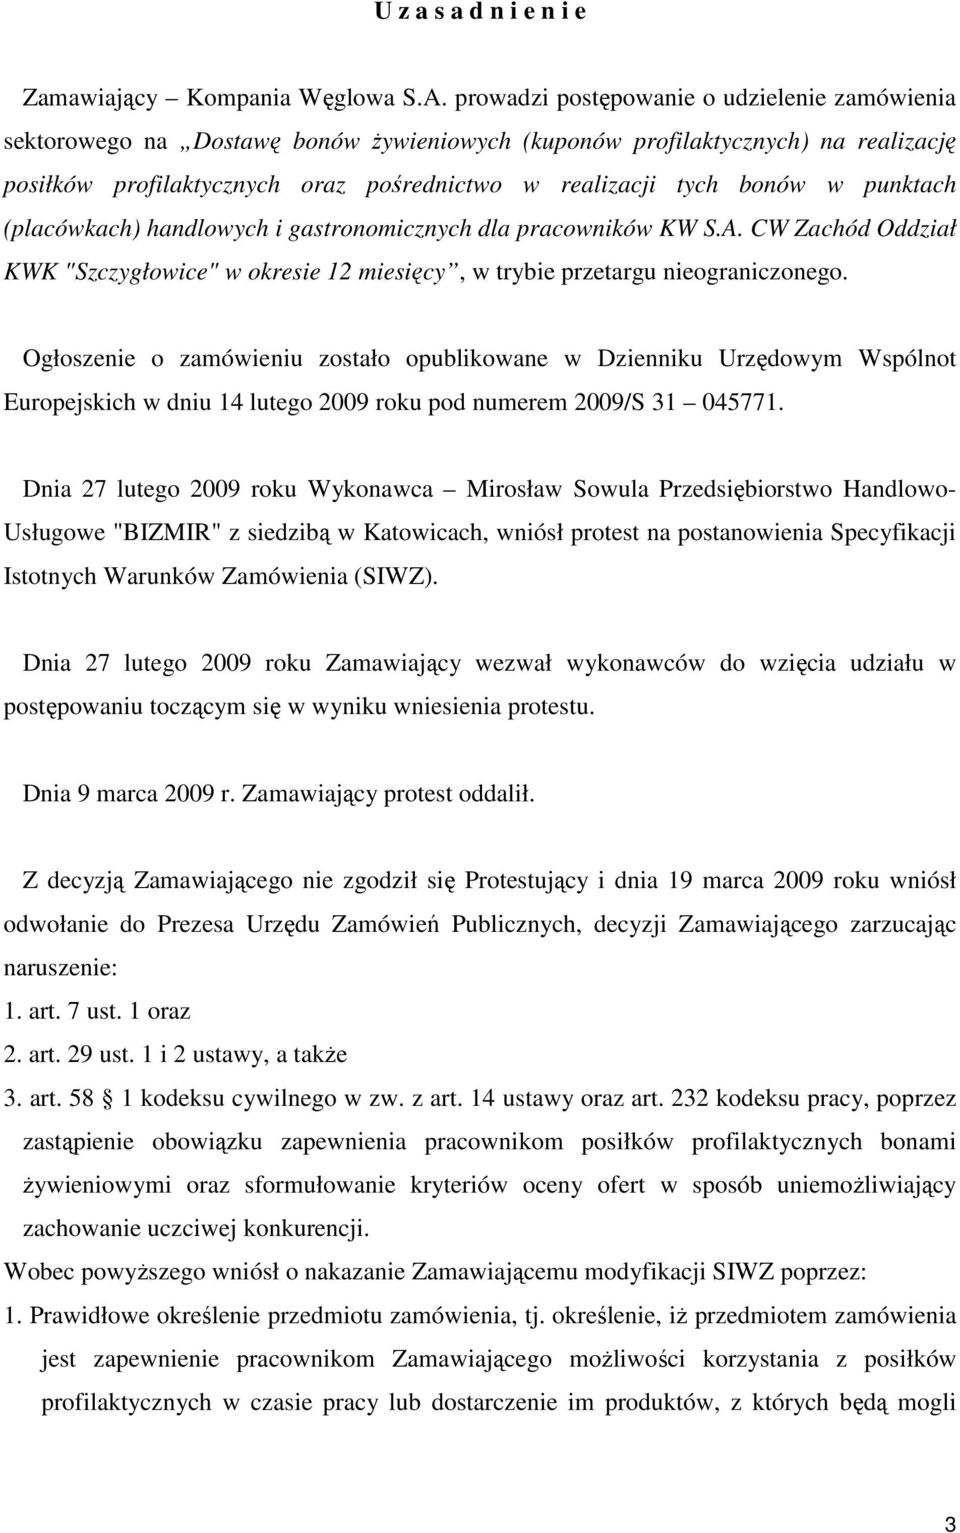 punktach (placówkach) handlowych i gastronomicznych dla pracowników KW S.A. CW Zachód Oddział KWK "Szczygłowice" w okresie 12 miesięcy, w trybie przetargu nieograniczonego.